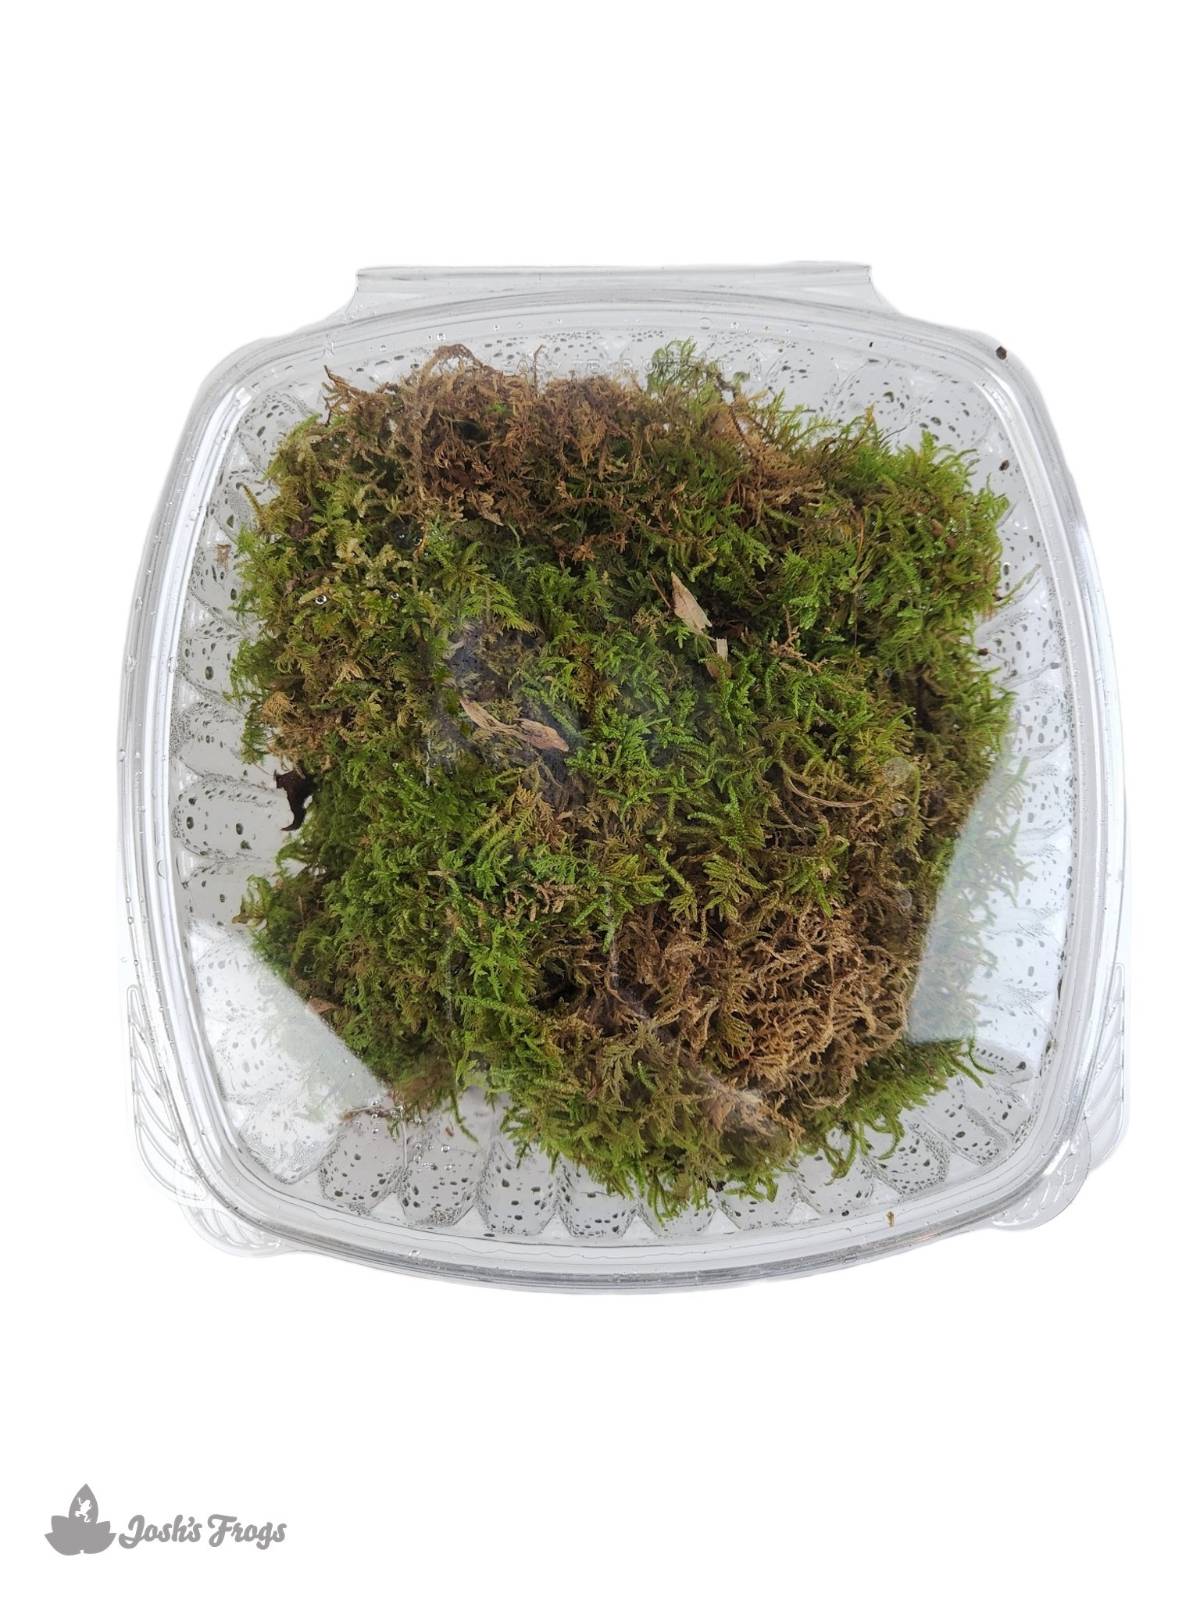 Live Sheet Moss, 1 quart bag, Terrarium moss, Live Sphagnum Moss